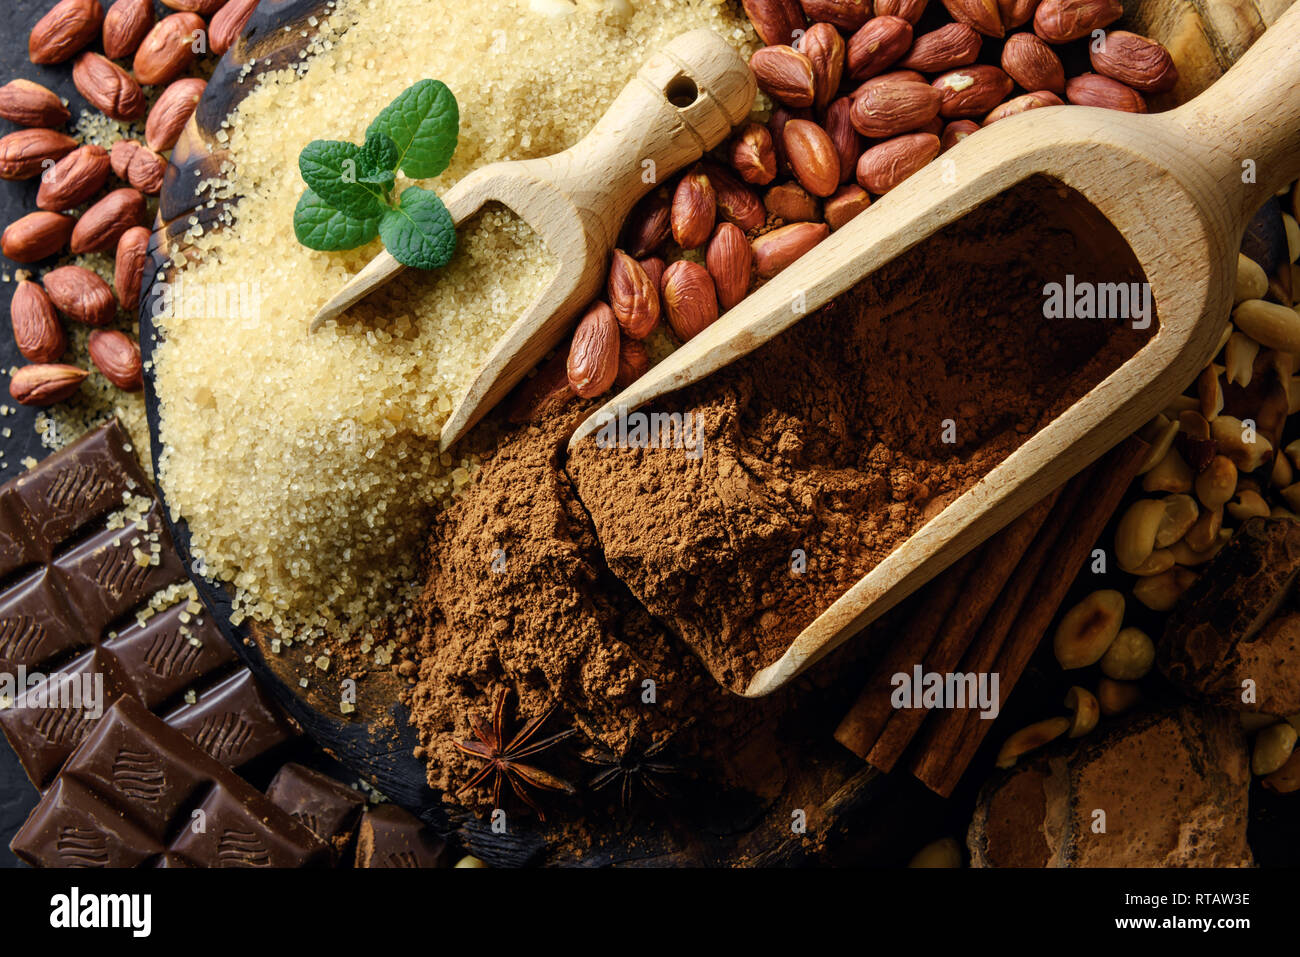 Poudre de cacao, chocolat, noix et d'épices sur une table en bois. La photographie alimentaire Banque D'Images